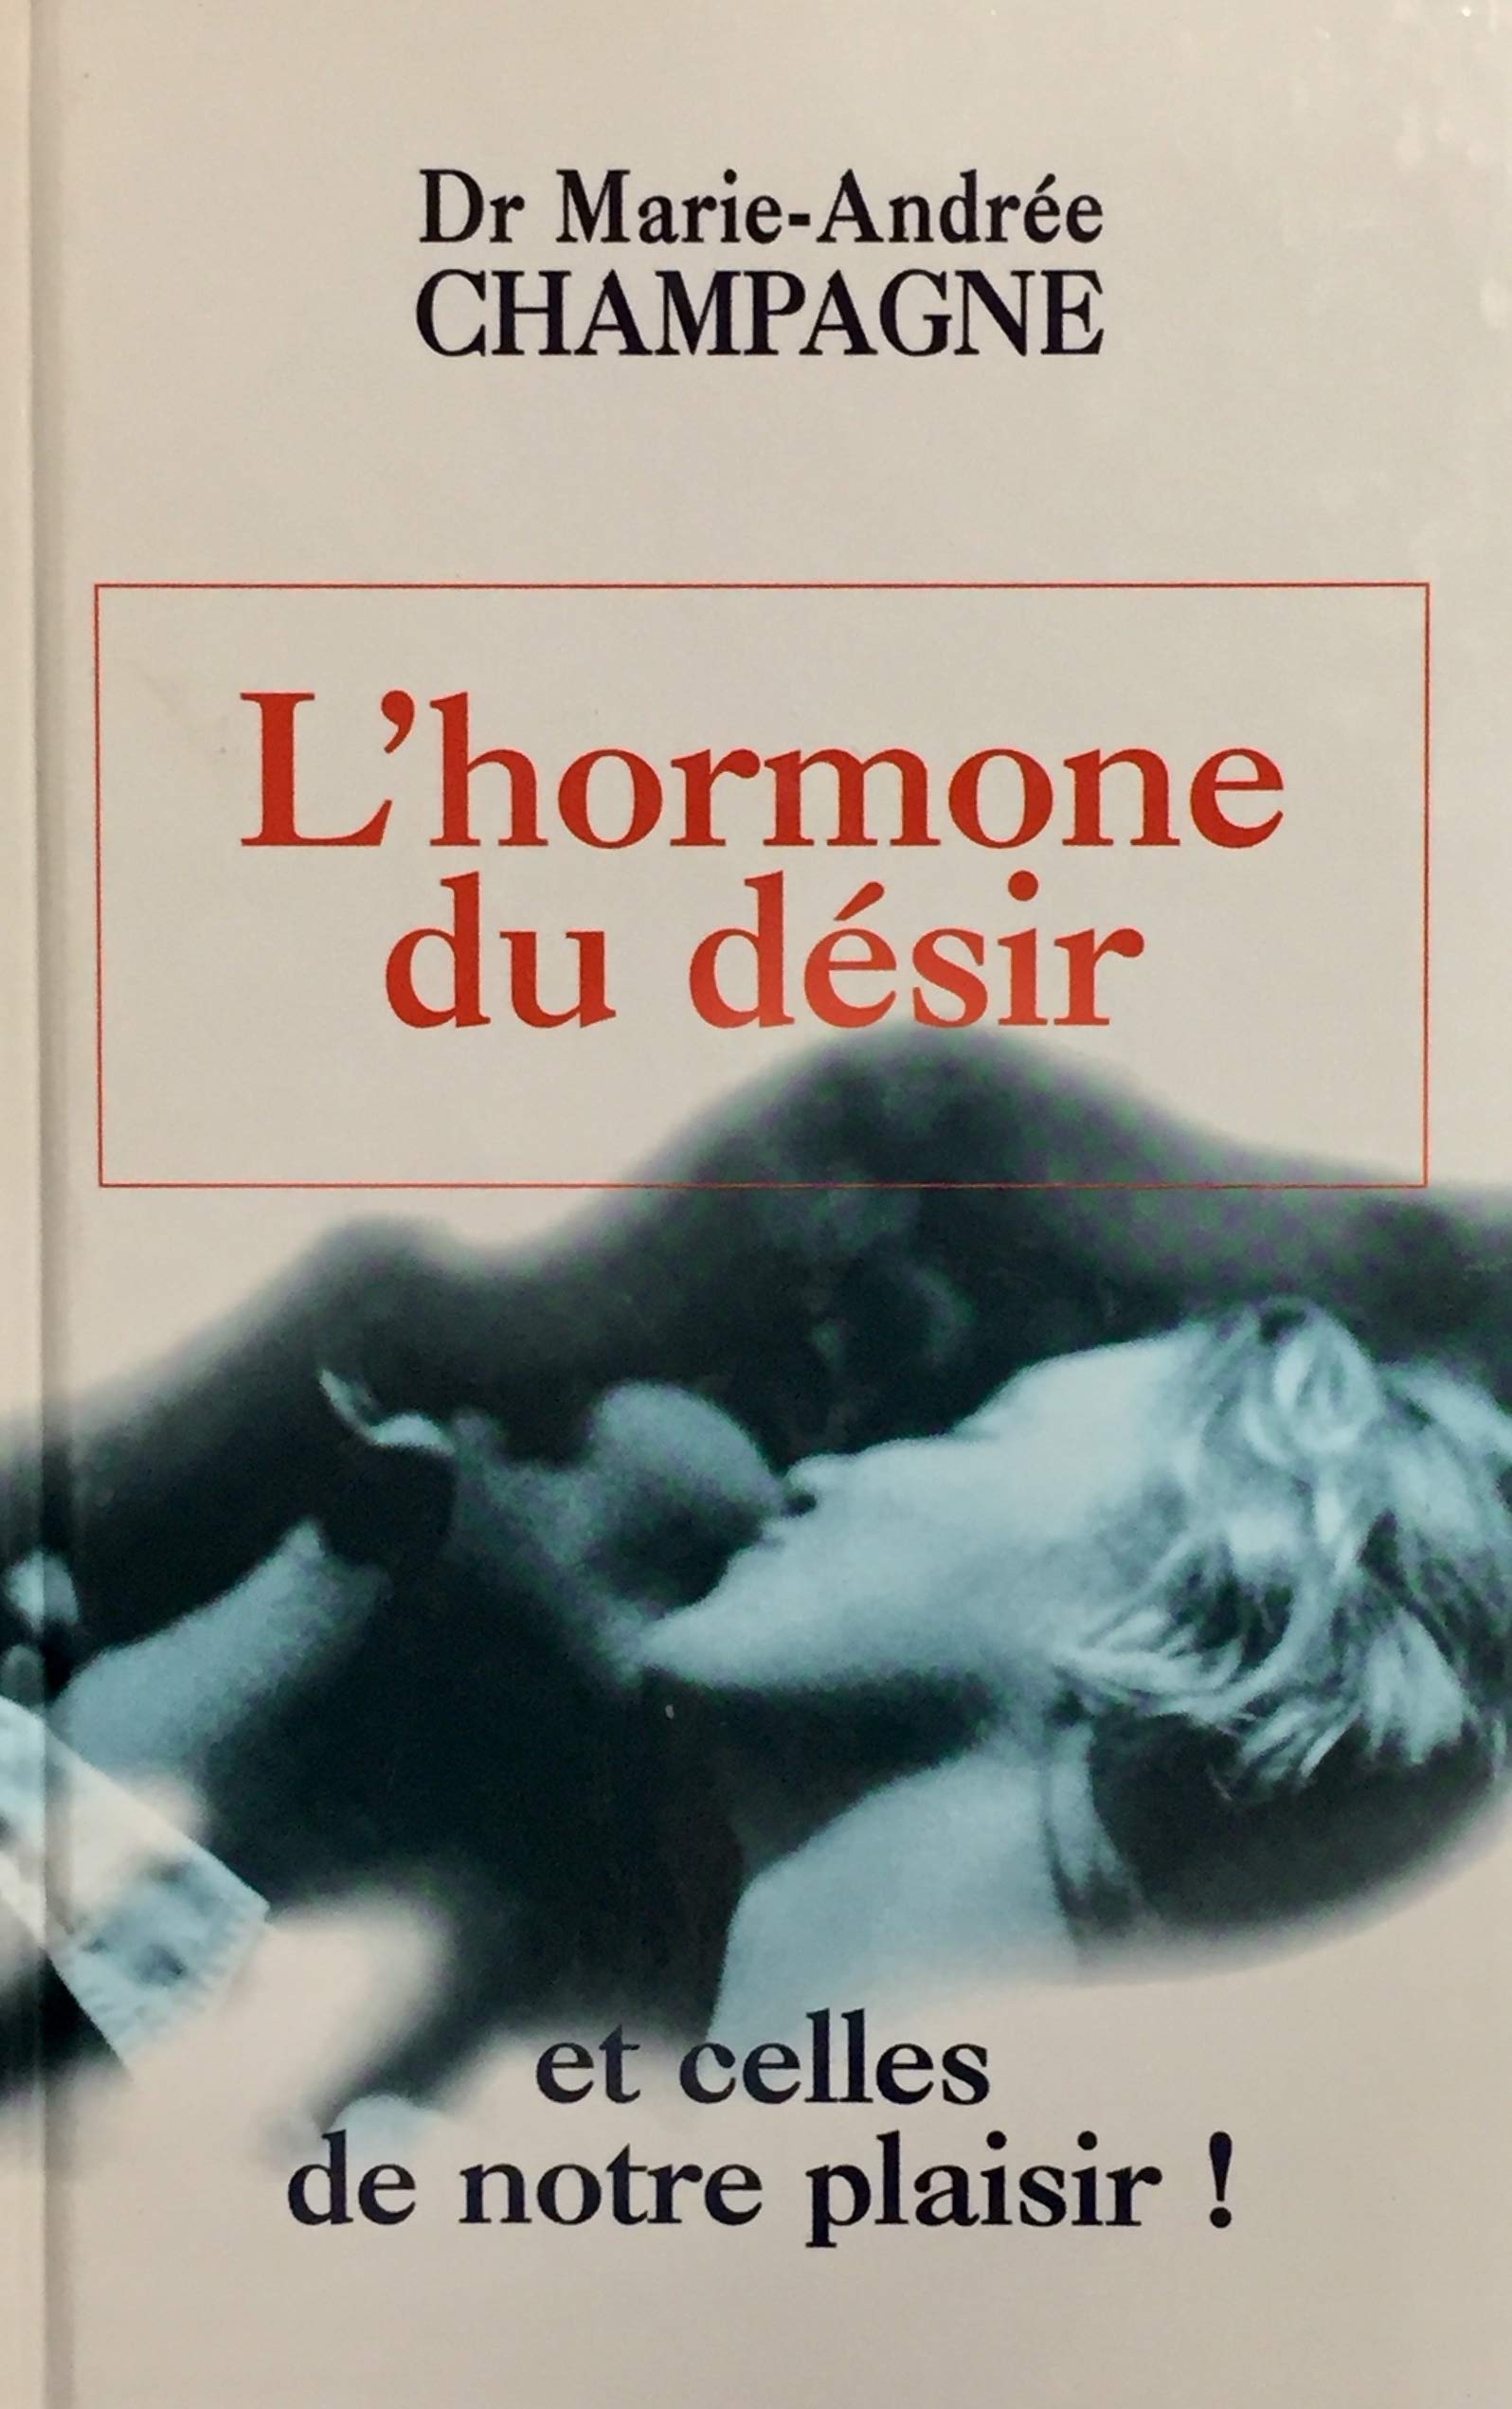 Livre ISBN 2894304242 L'hormone du désir et celles de notre plaisir! (Dr Marie-Andrée Champagne)